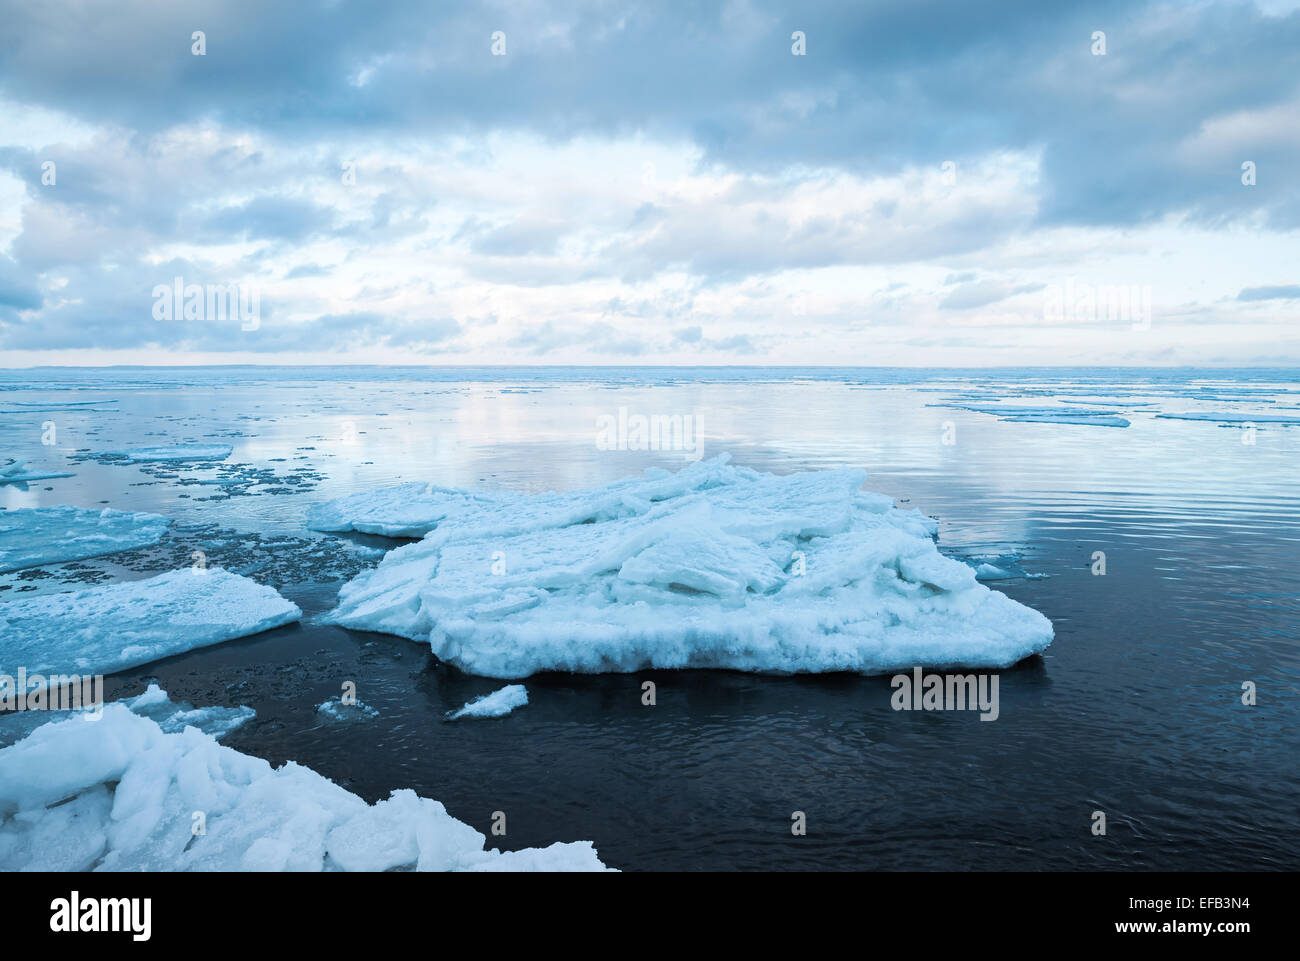 Paysage côtier d'hiver avec des fragments de glace flottante grand encore sur l'eau de mer. Golfe de Finlande, de Russie. Photo dans les tons bleus Banque D'Images